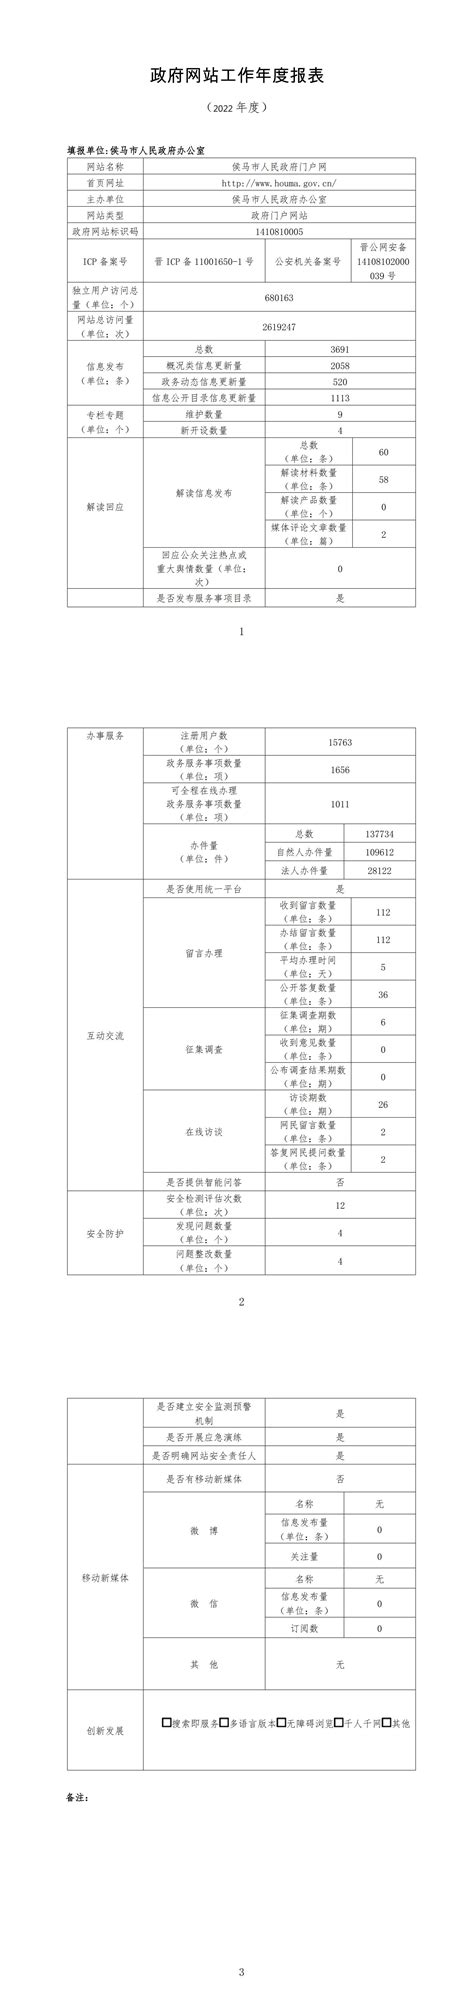 政府网站工作年度报表（2022年度） - 网站报表 - 陕西省应急管理厅